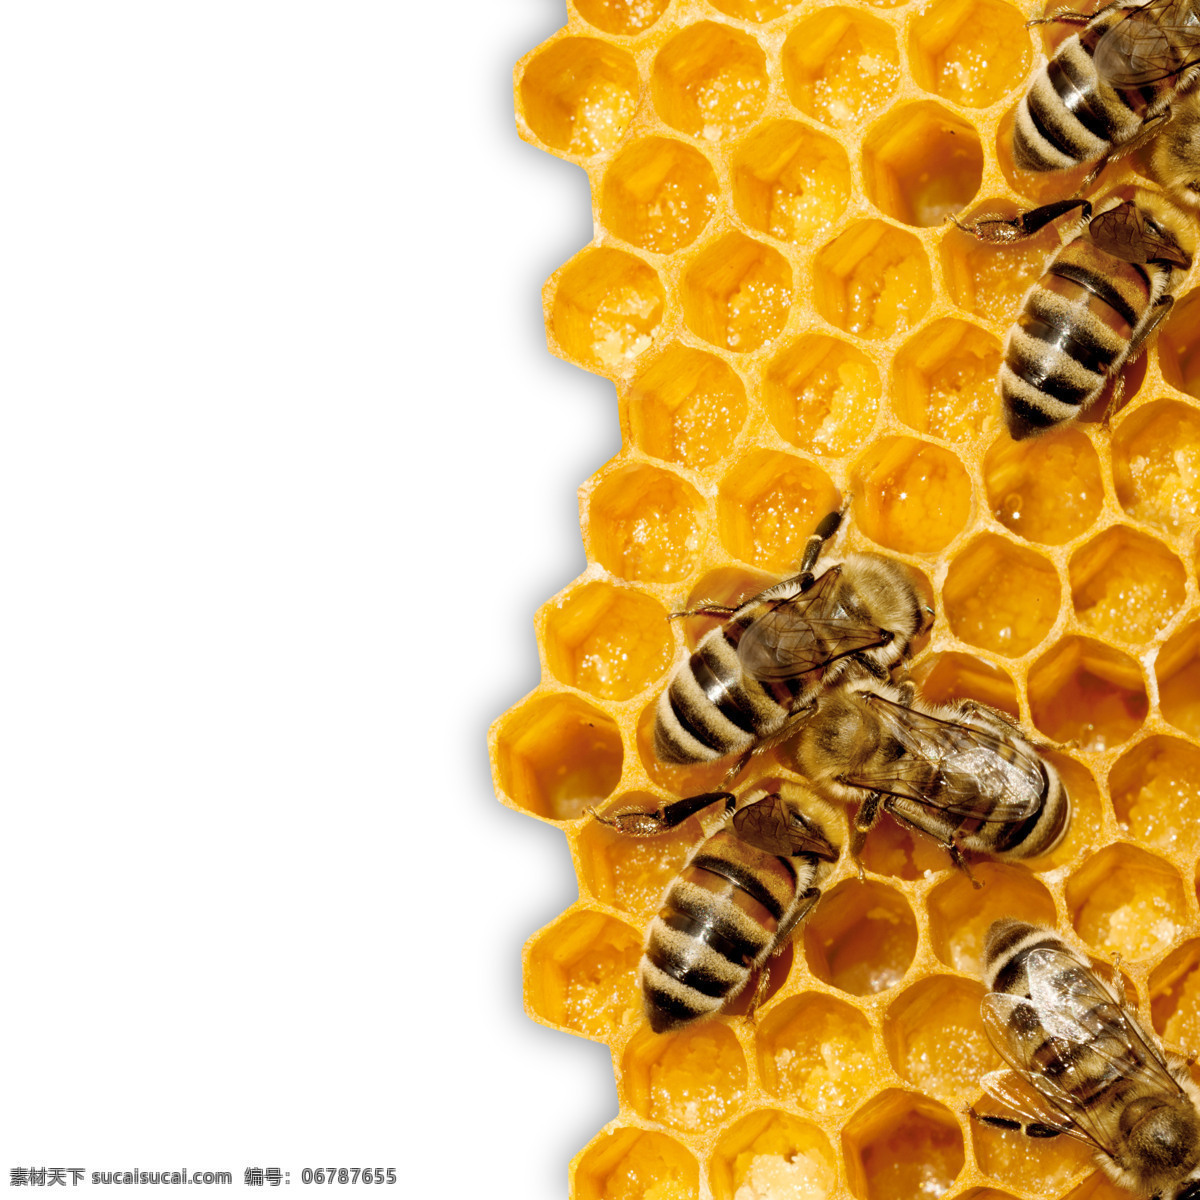 蜜蜂 蜂巢 峰 穴 昆虫 峰穴 蜂蜡 蜜蜂摄影图片 生物世界